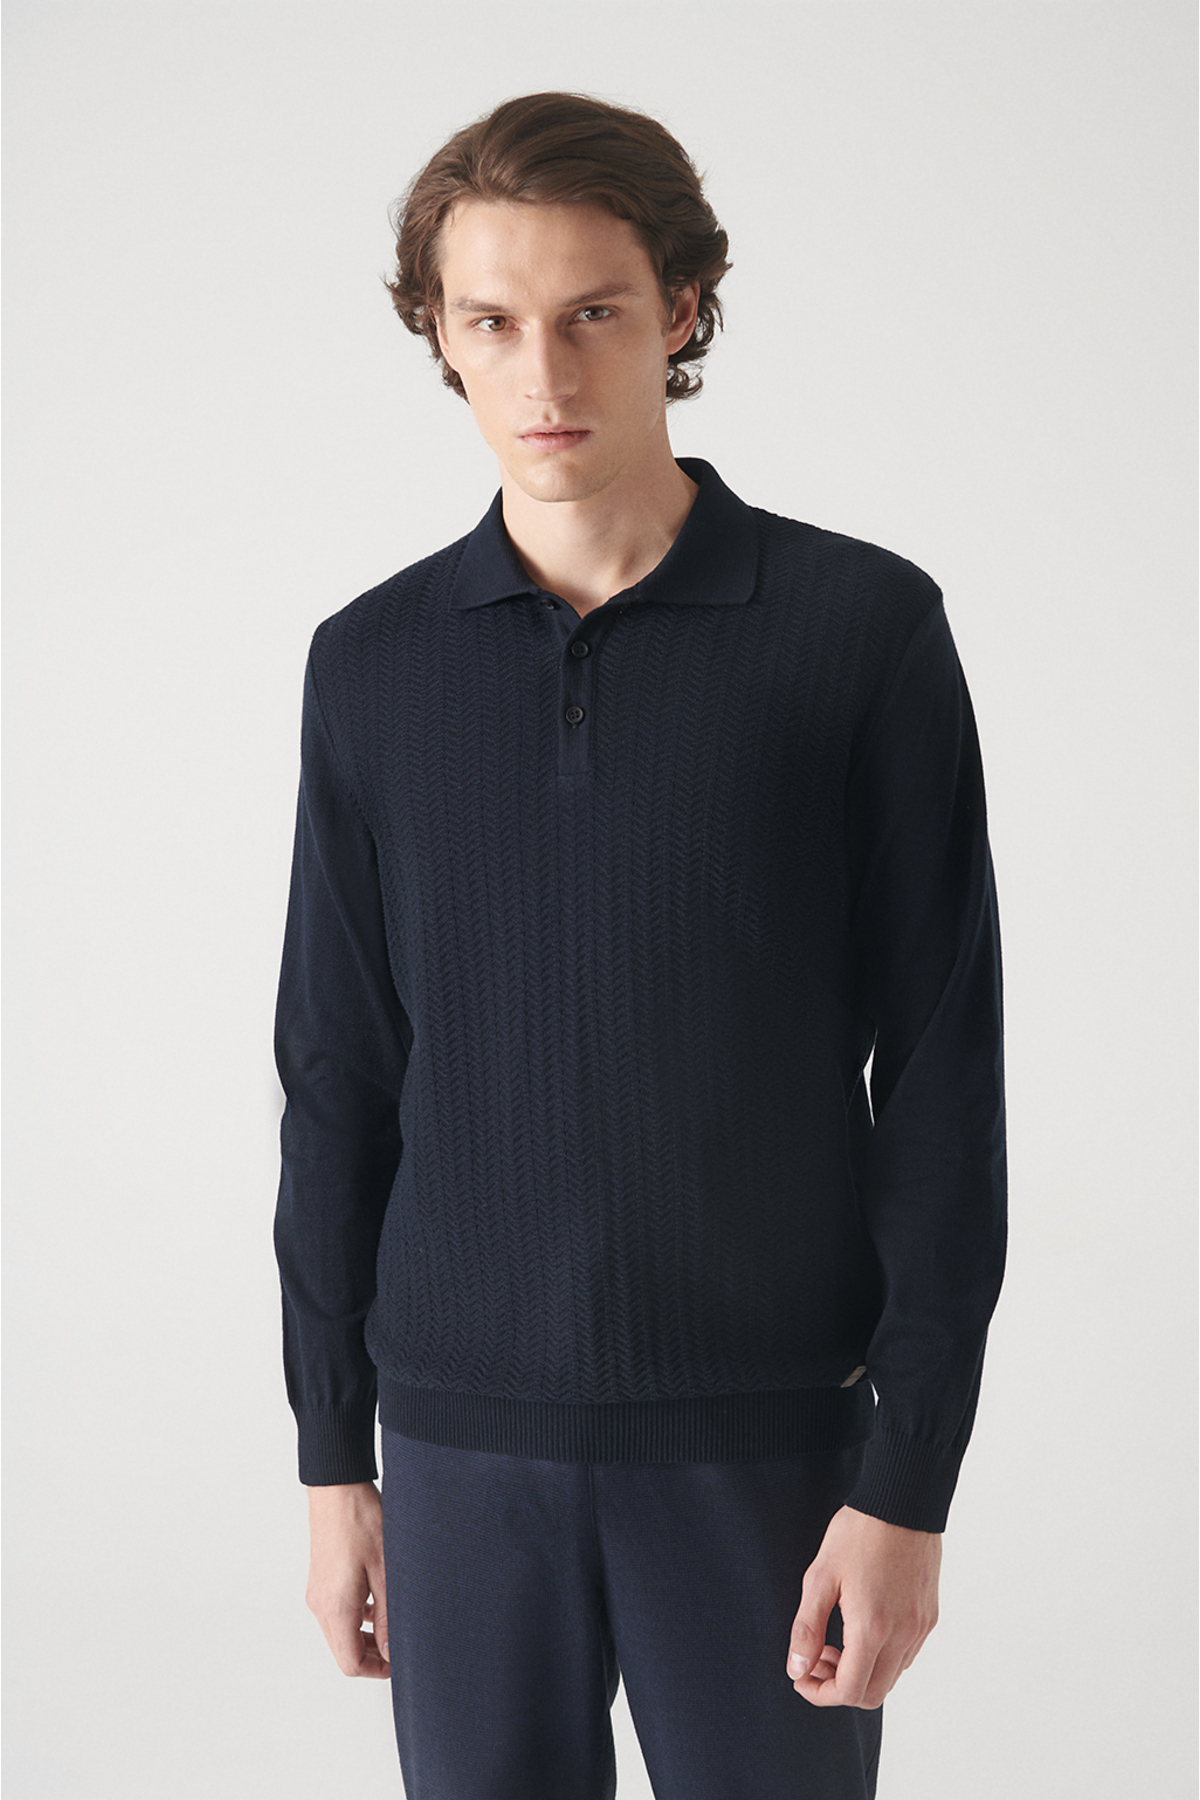 Levně Avva Men's Navy Blue Polo Neck Herringbone Patterned Cotton Regular Fit Knitwear Sweater